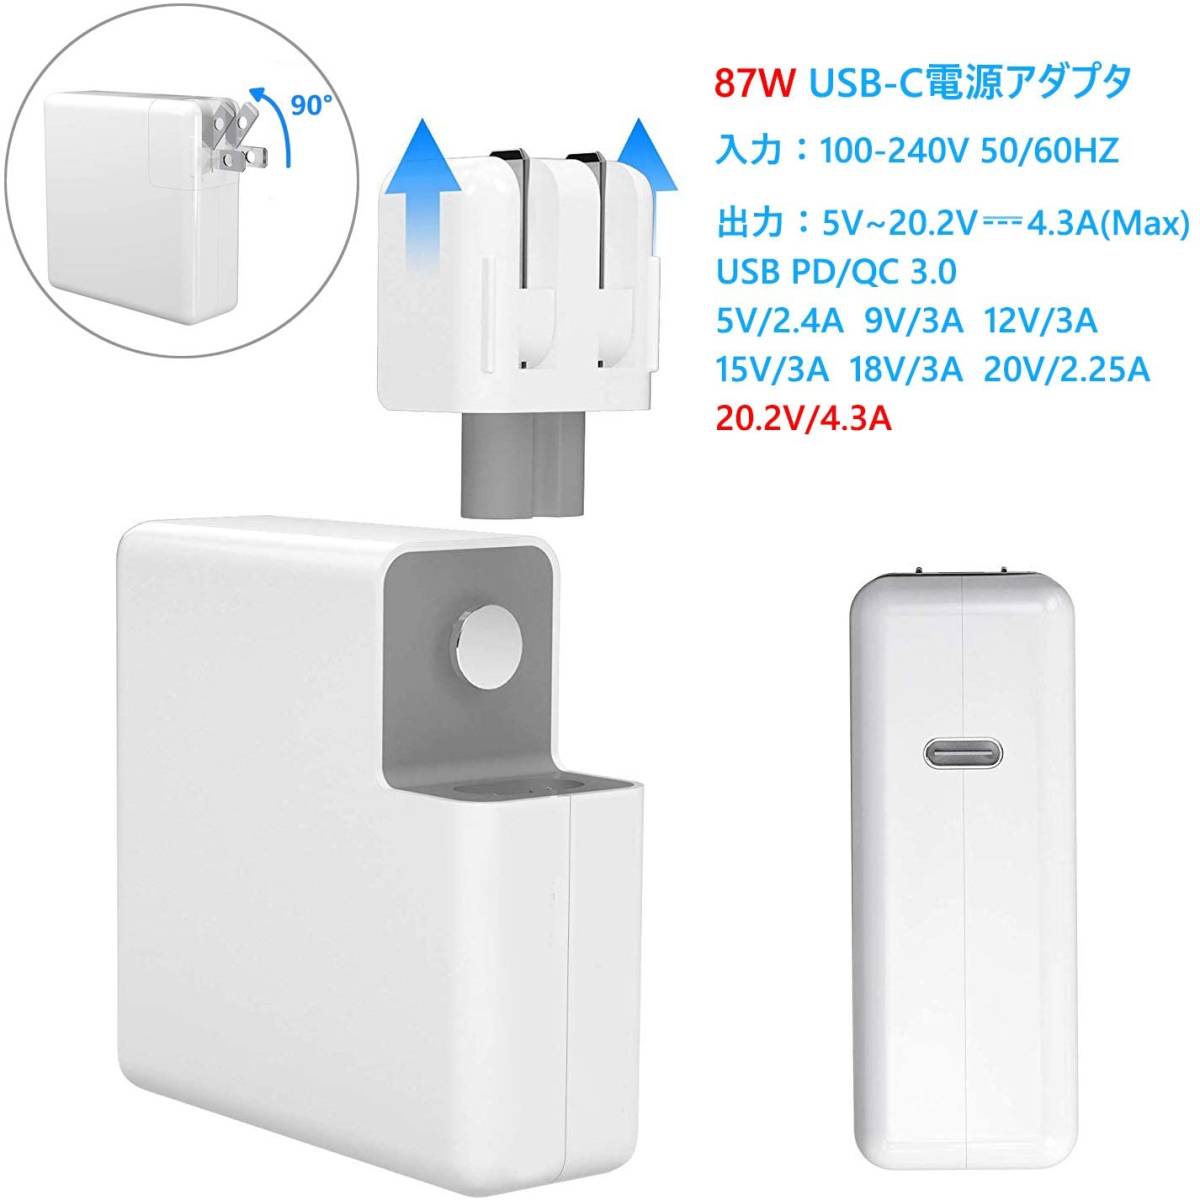 87W USB C 充電器 Macbook Pro Type-C アダプター PD タイプ-C 電源アダプタ Type C 急速充電器